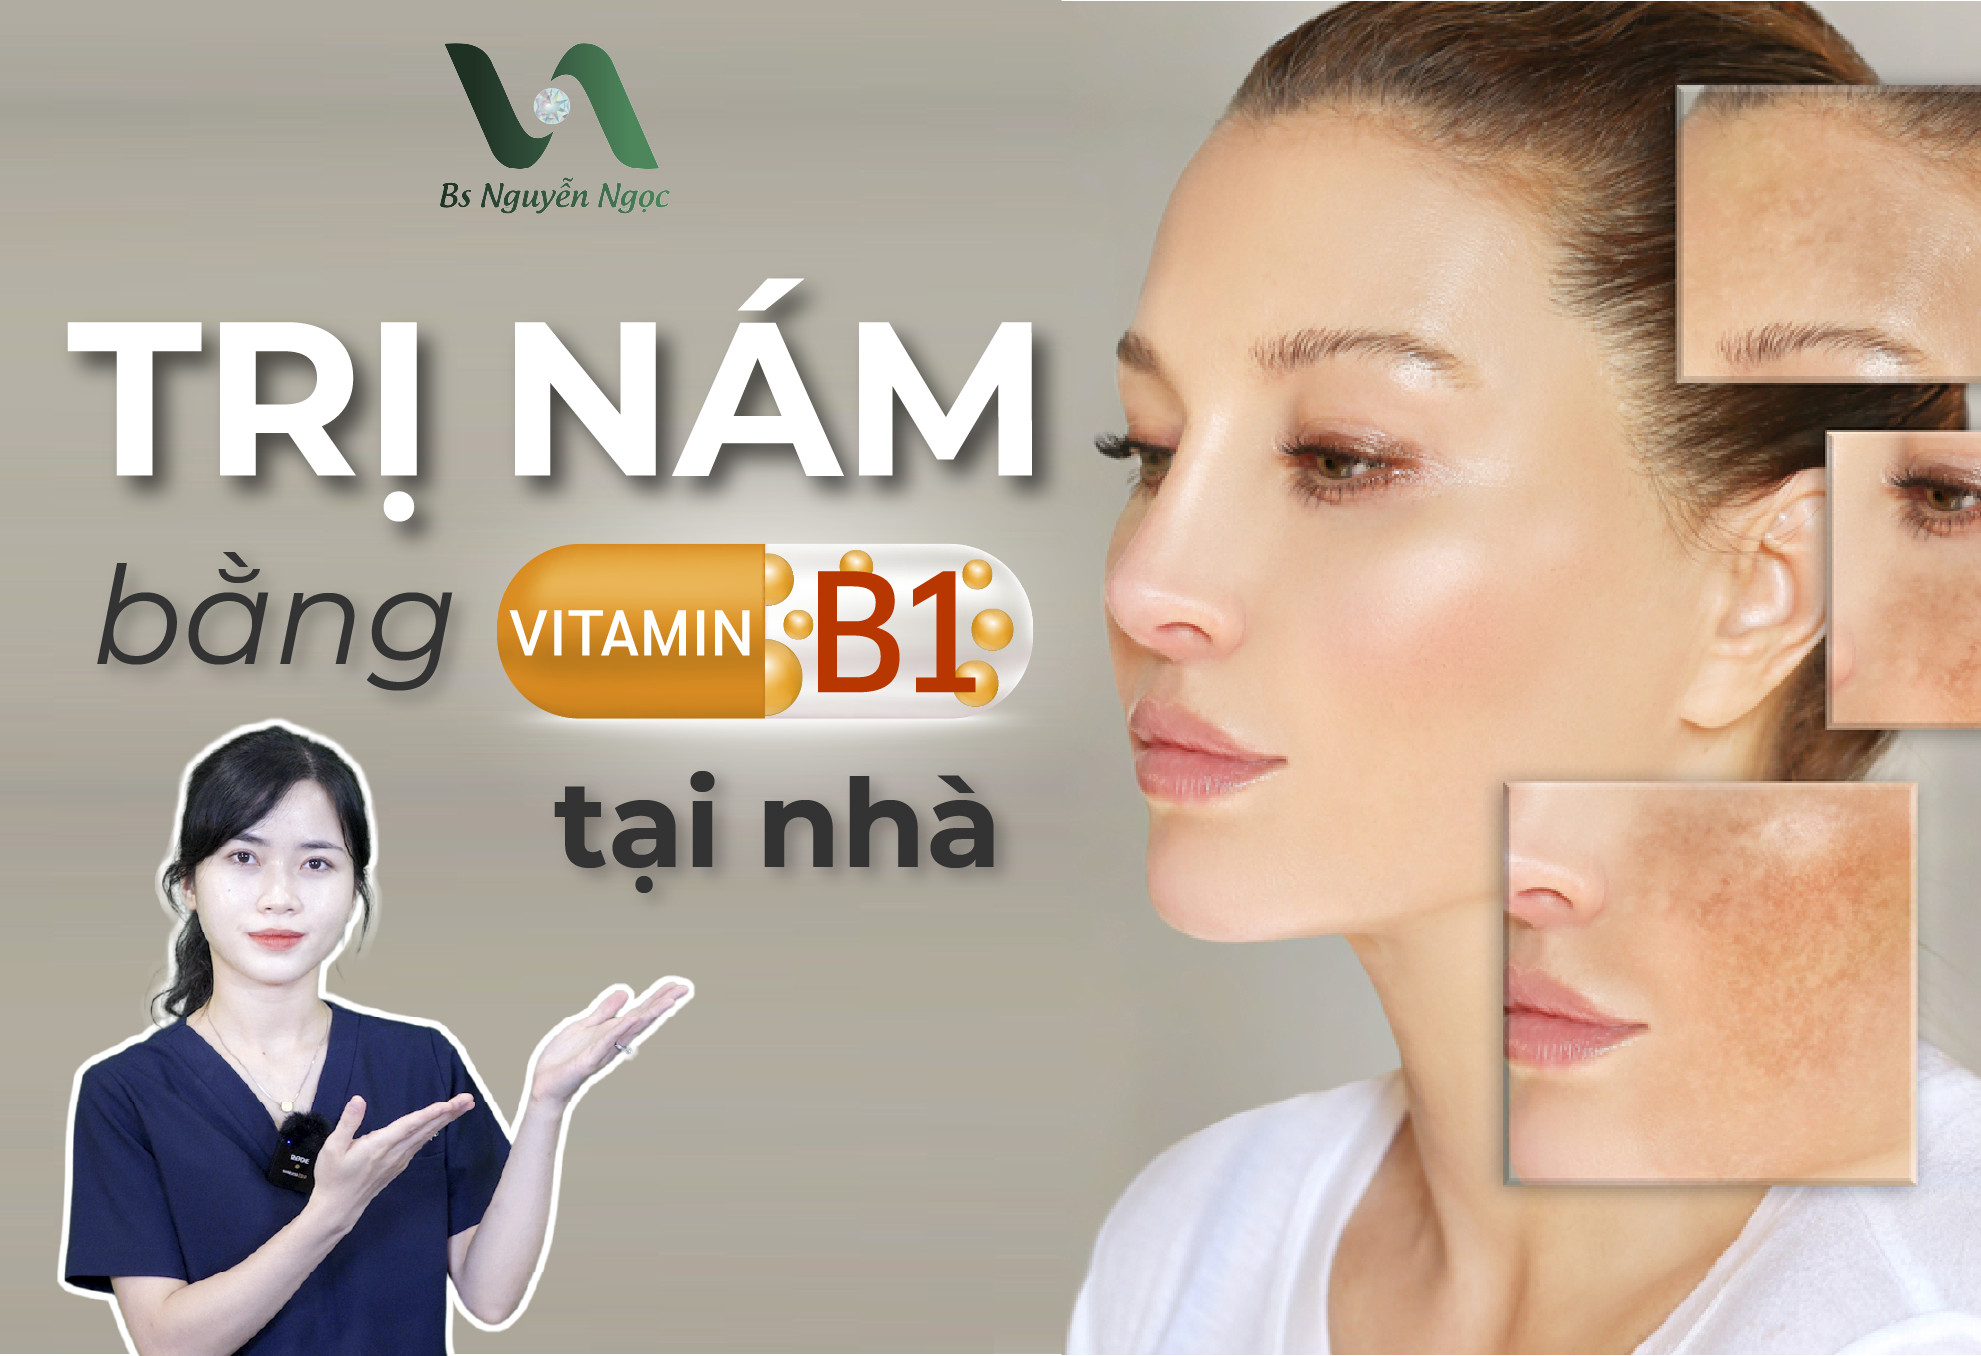 Cách trị nám bằng vitamin B1 nhanh chóng ngay tại nhà